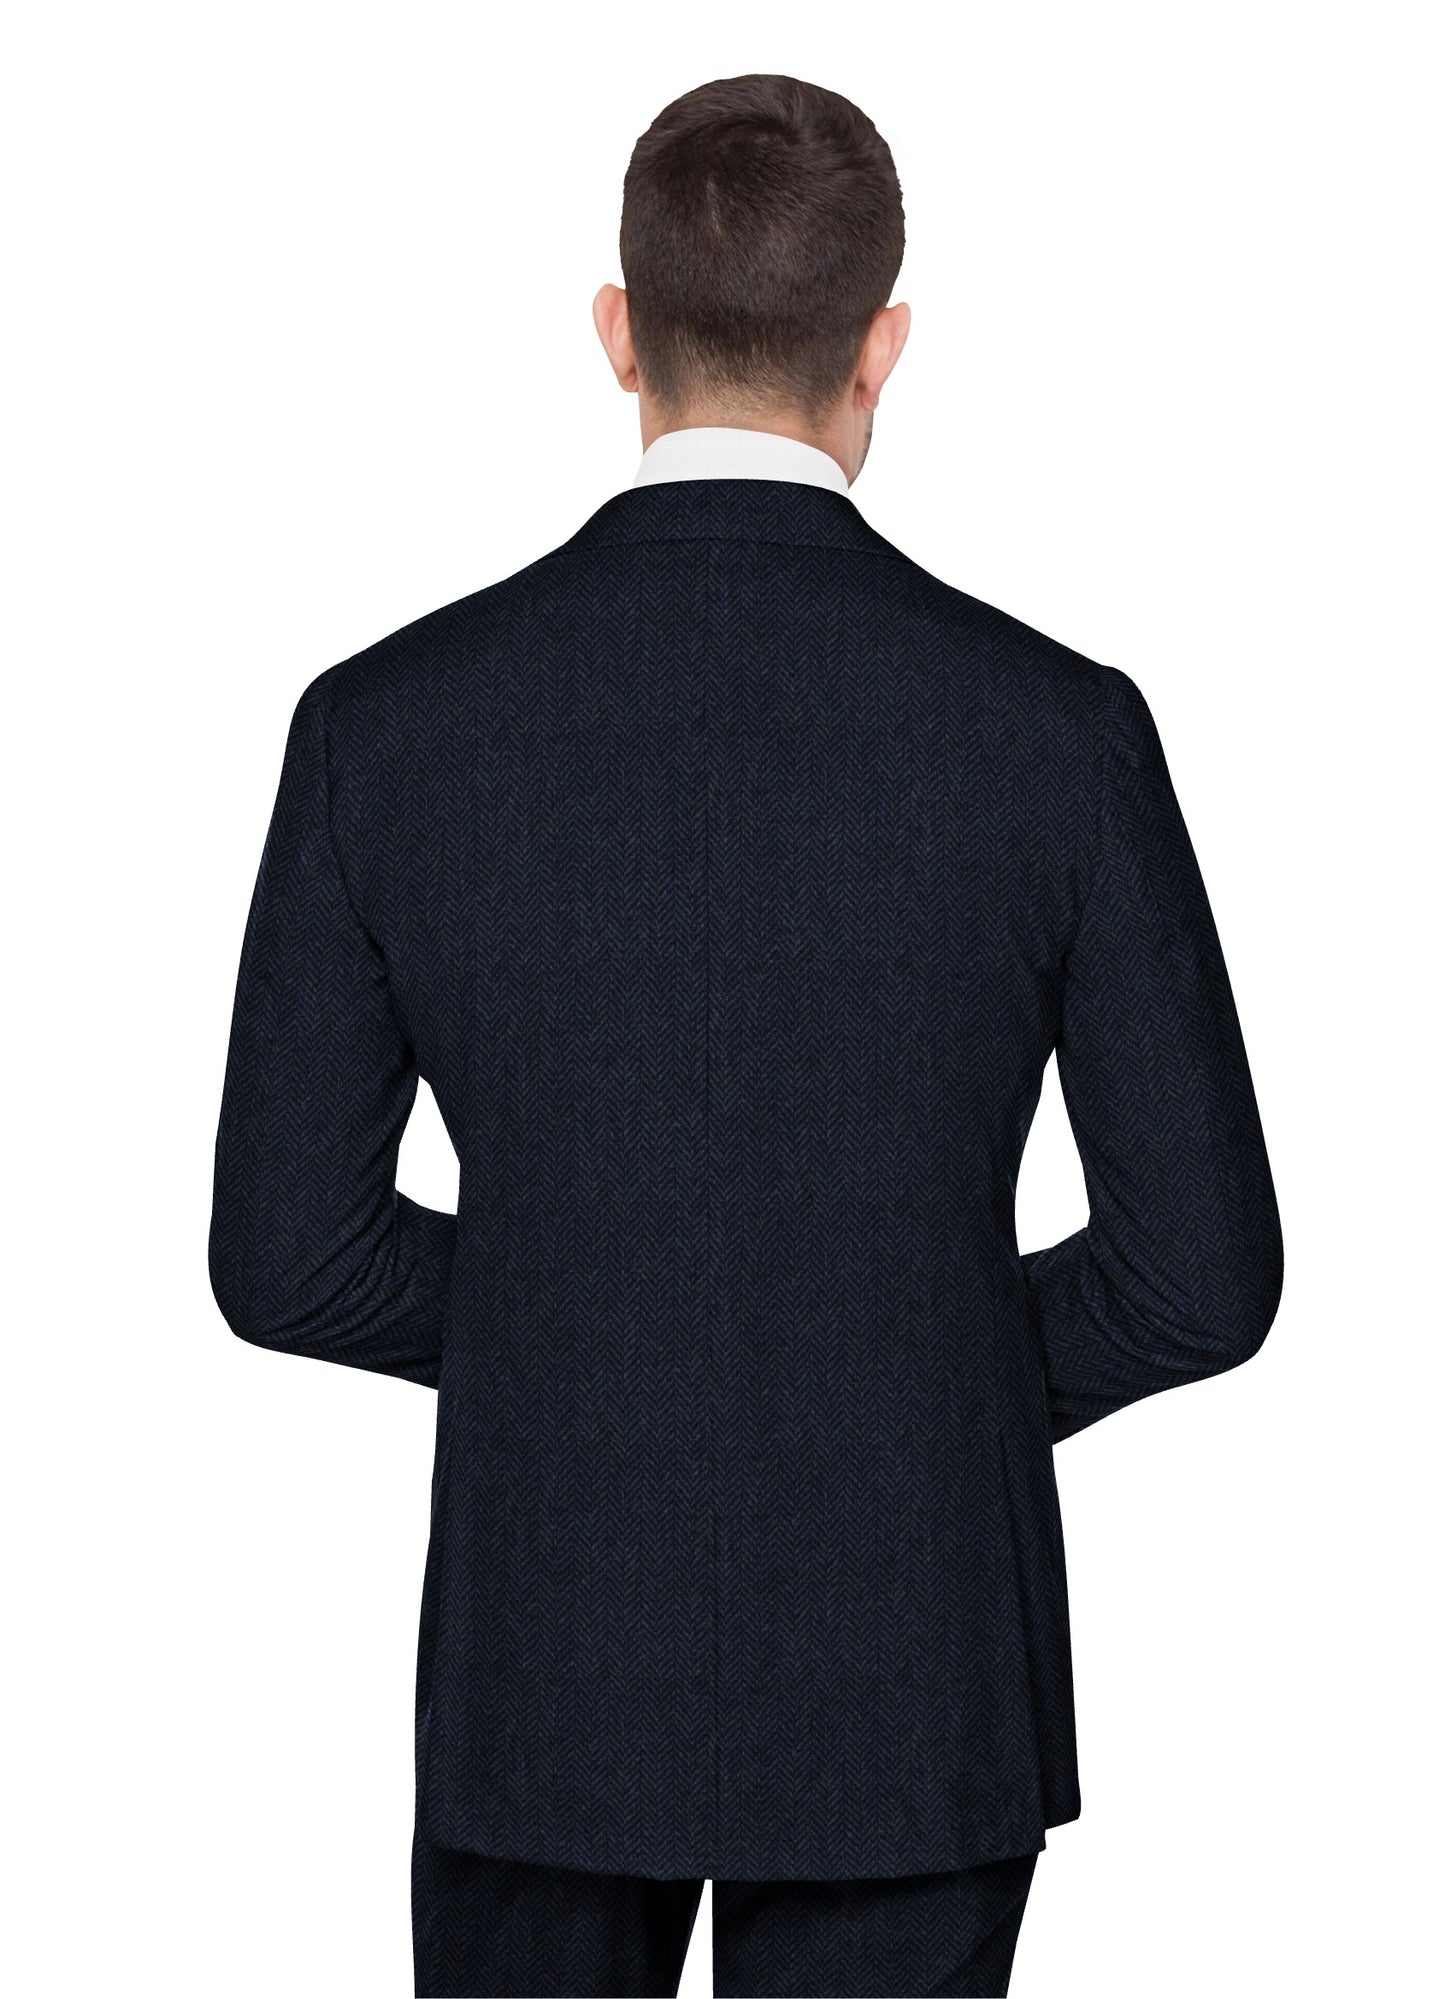 Dusty Navy Herringbone Tweed Suit